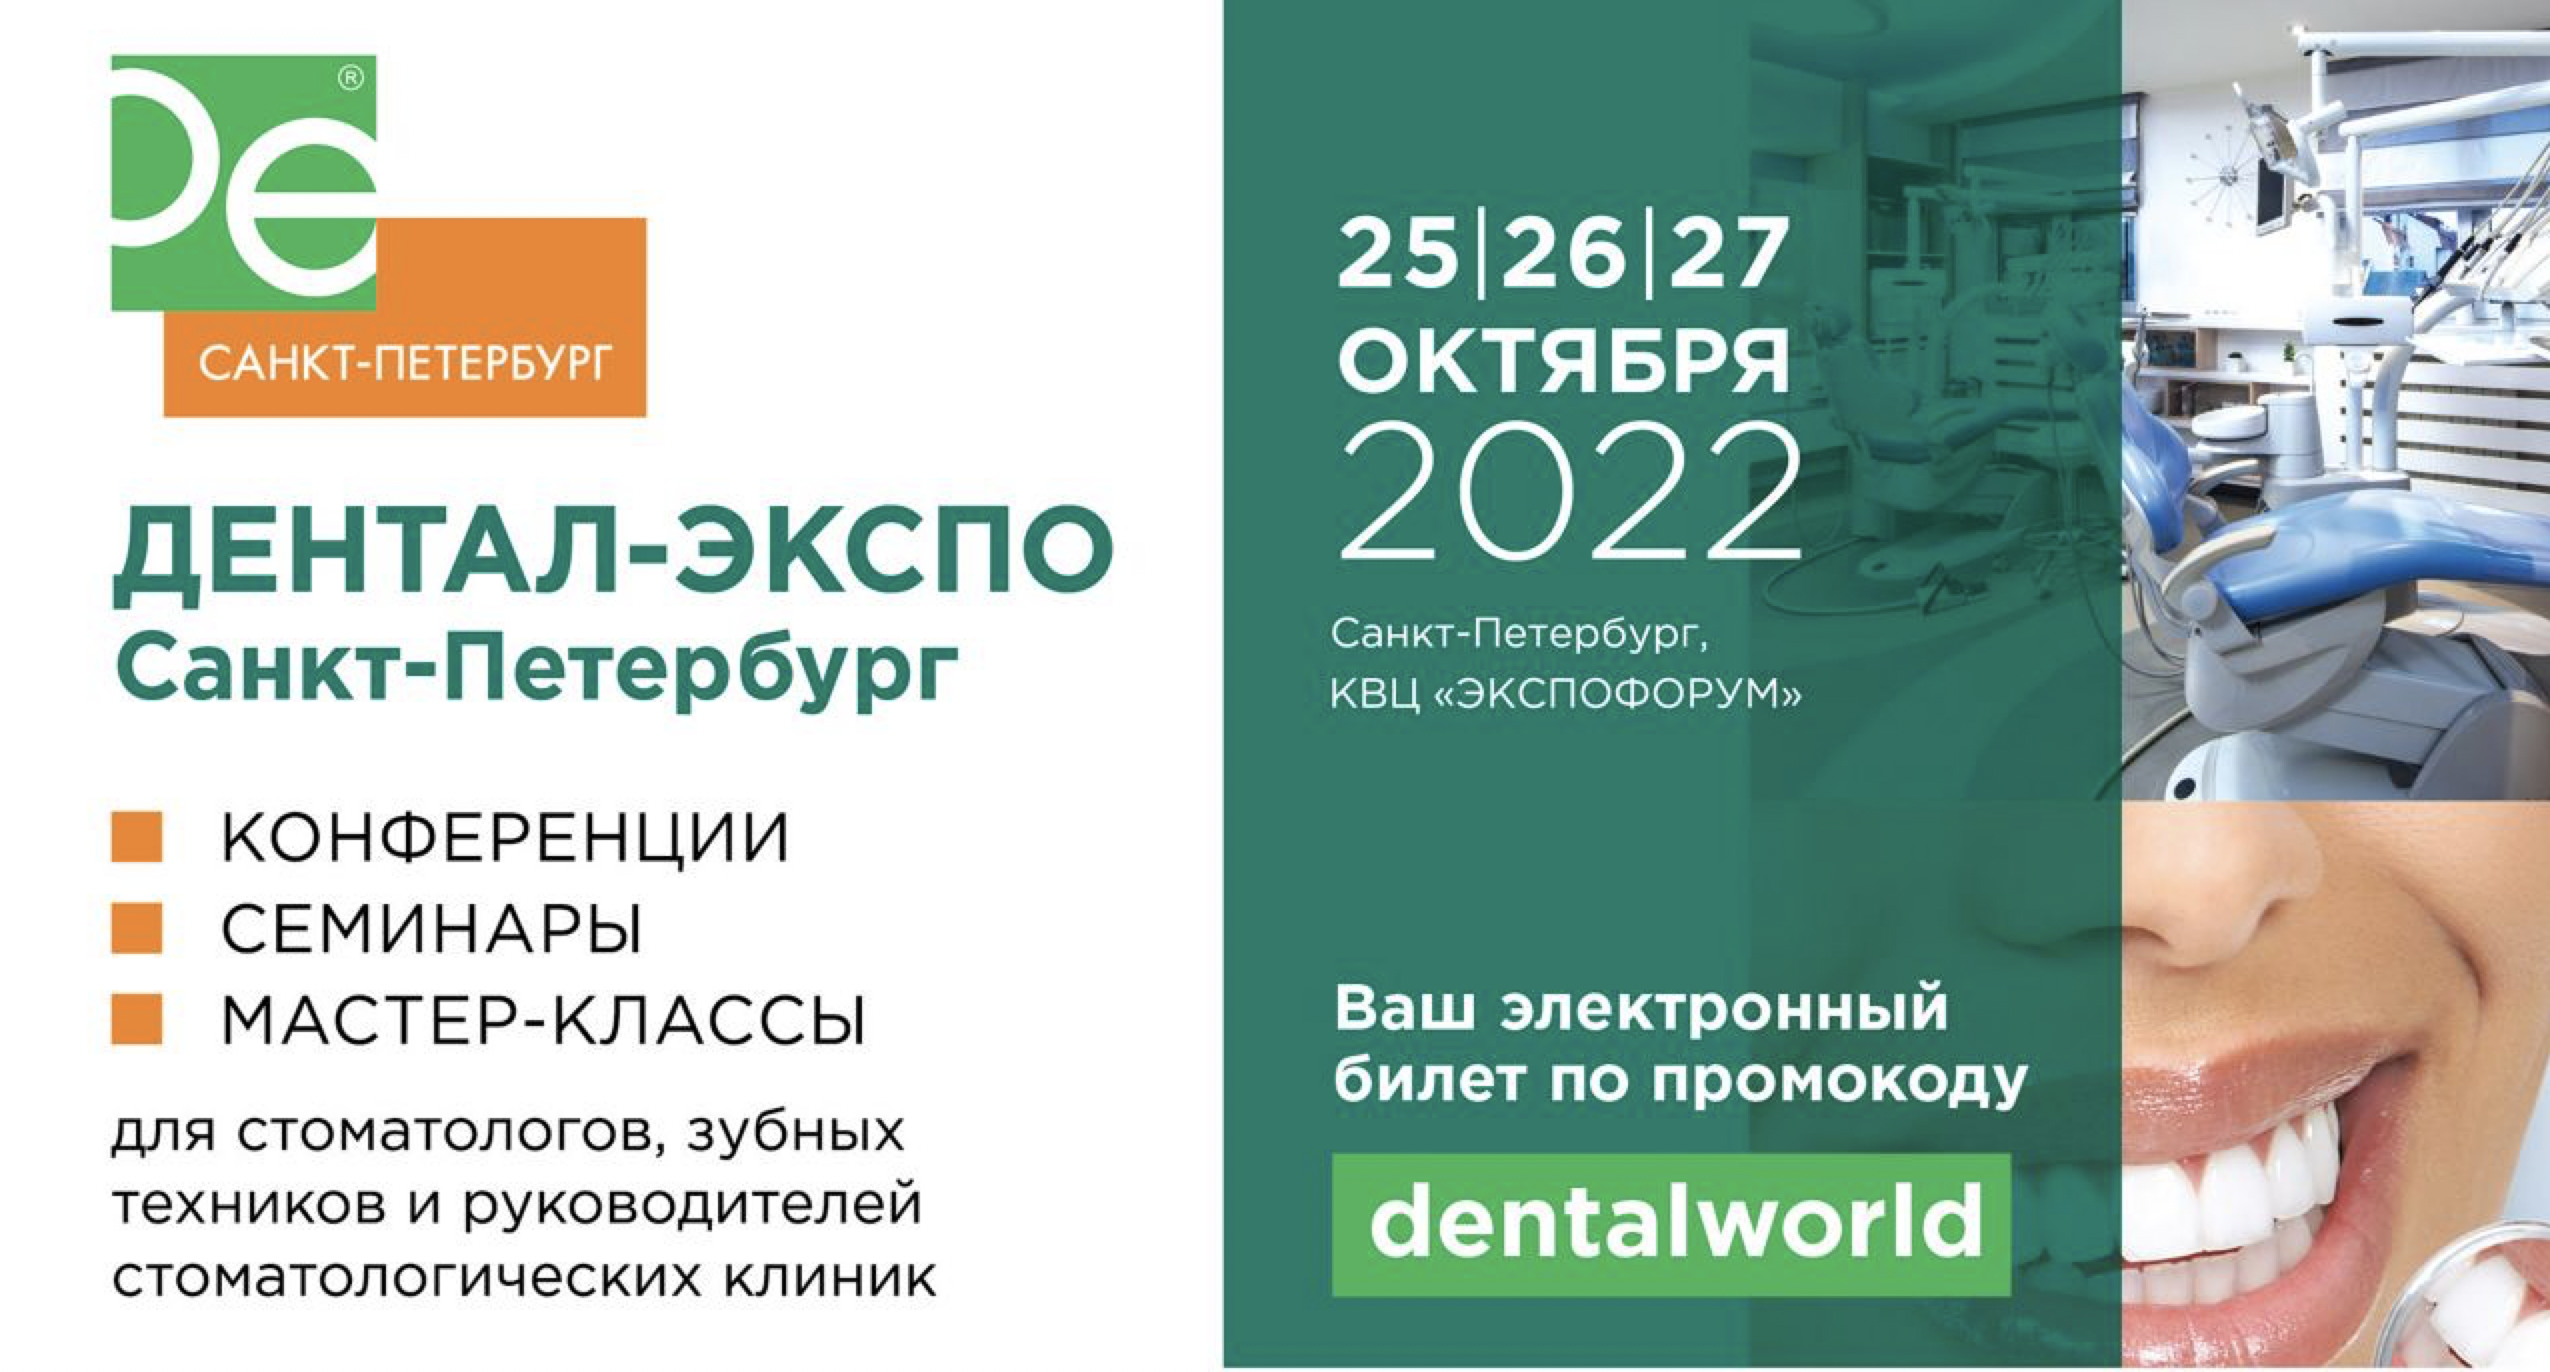 Симпозиум «Современные междисциплинарные подходы к диагностике, профилактике и лечению стоматологических заболеваний»